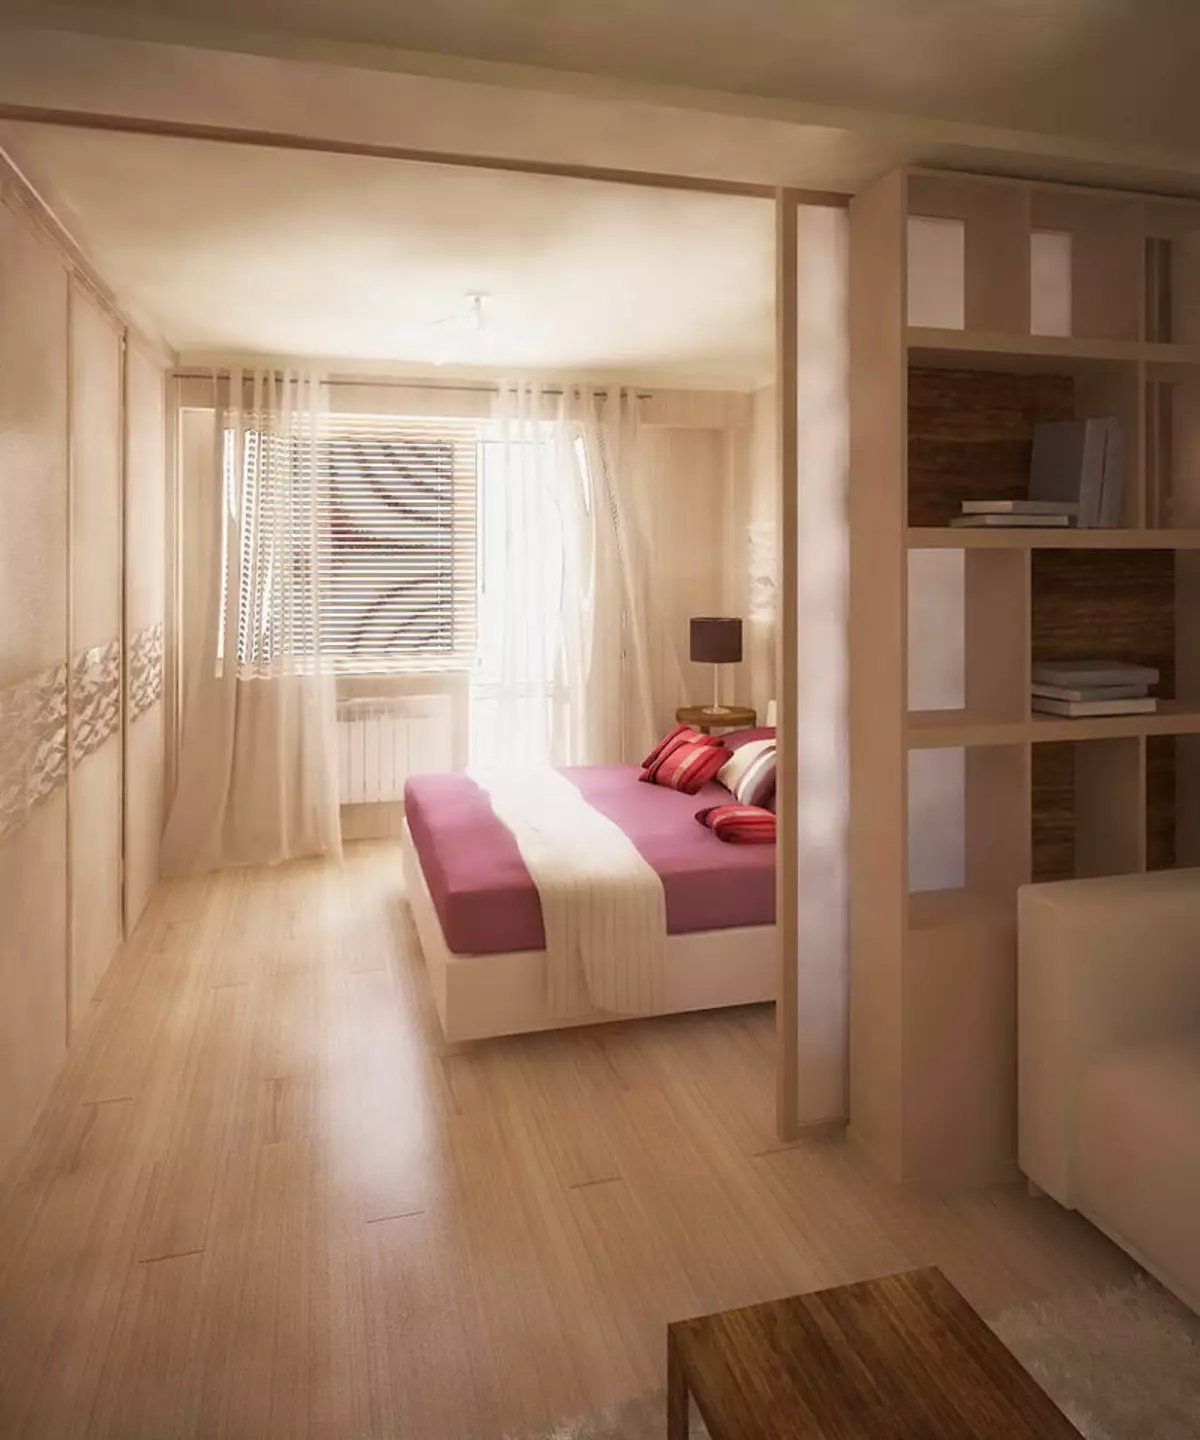 Miegamojo svetainė (112 nuotraukos): Interjero dizaino parinktys tos pačios patalpos interjero. Modulinių baldų ir tapetų, išdėstymo ir projektų pasirinkimas 9818_30